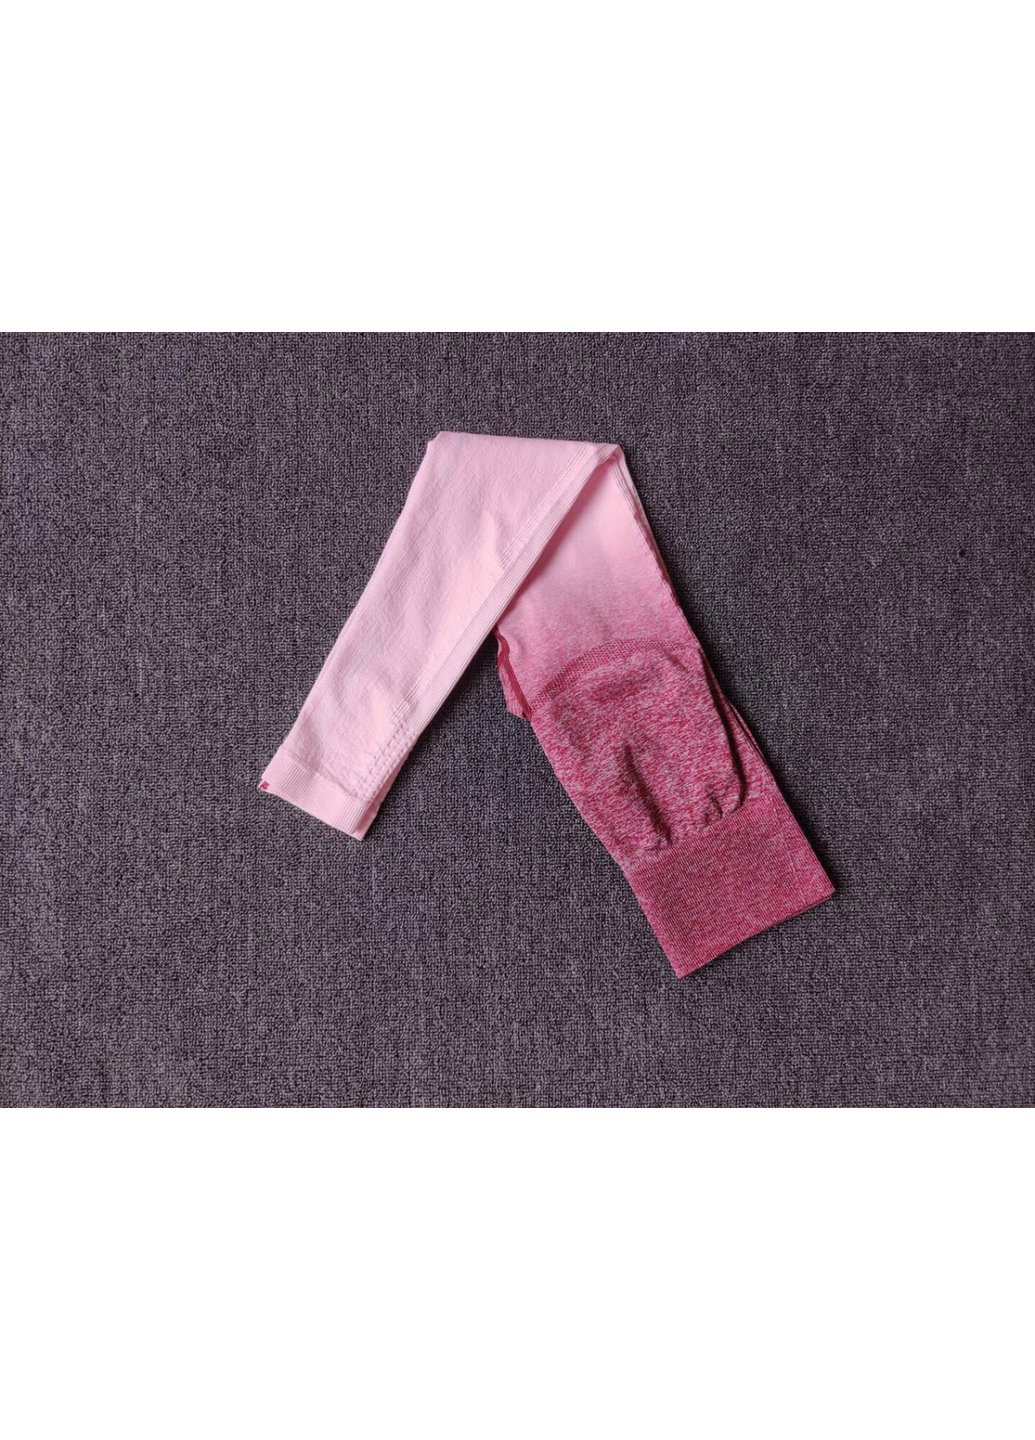 Розовые демисезонные леггинсы женские спортивные 6127 m розовые Fashion